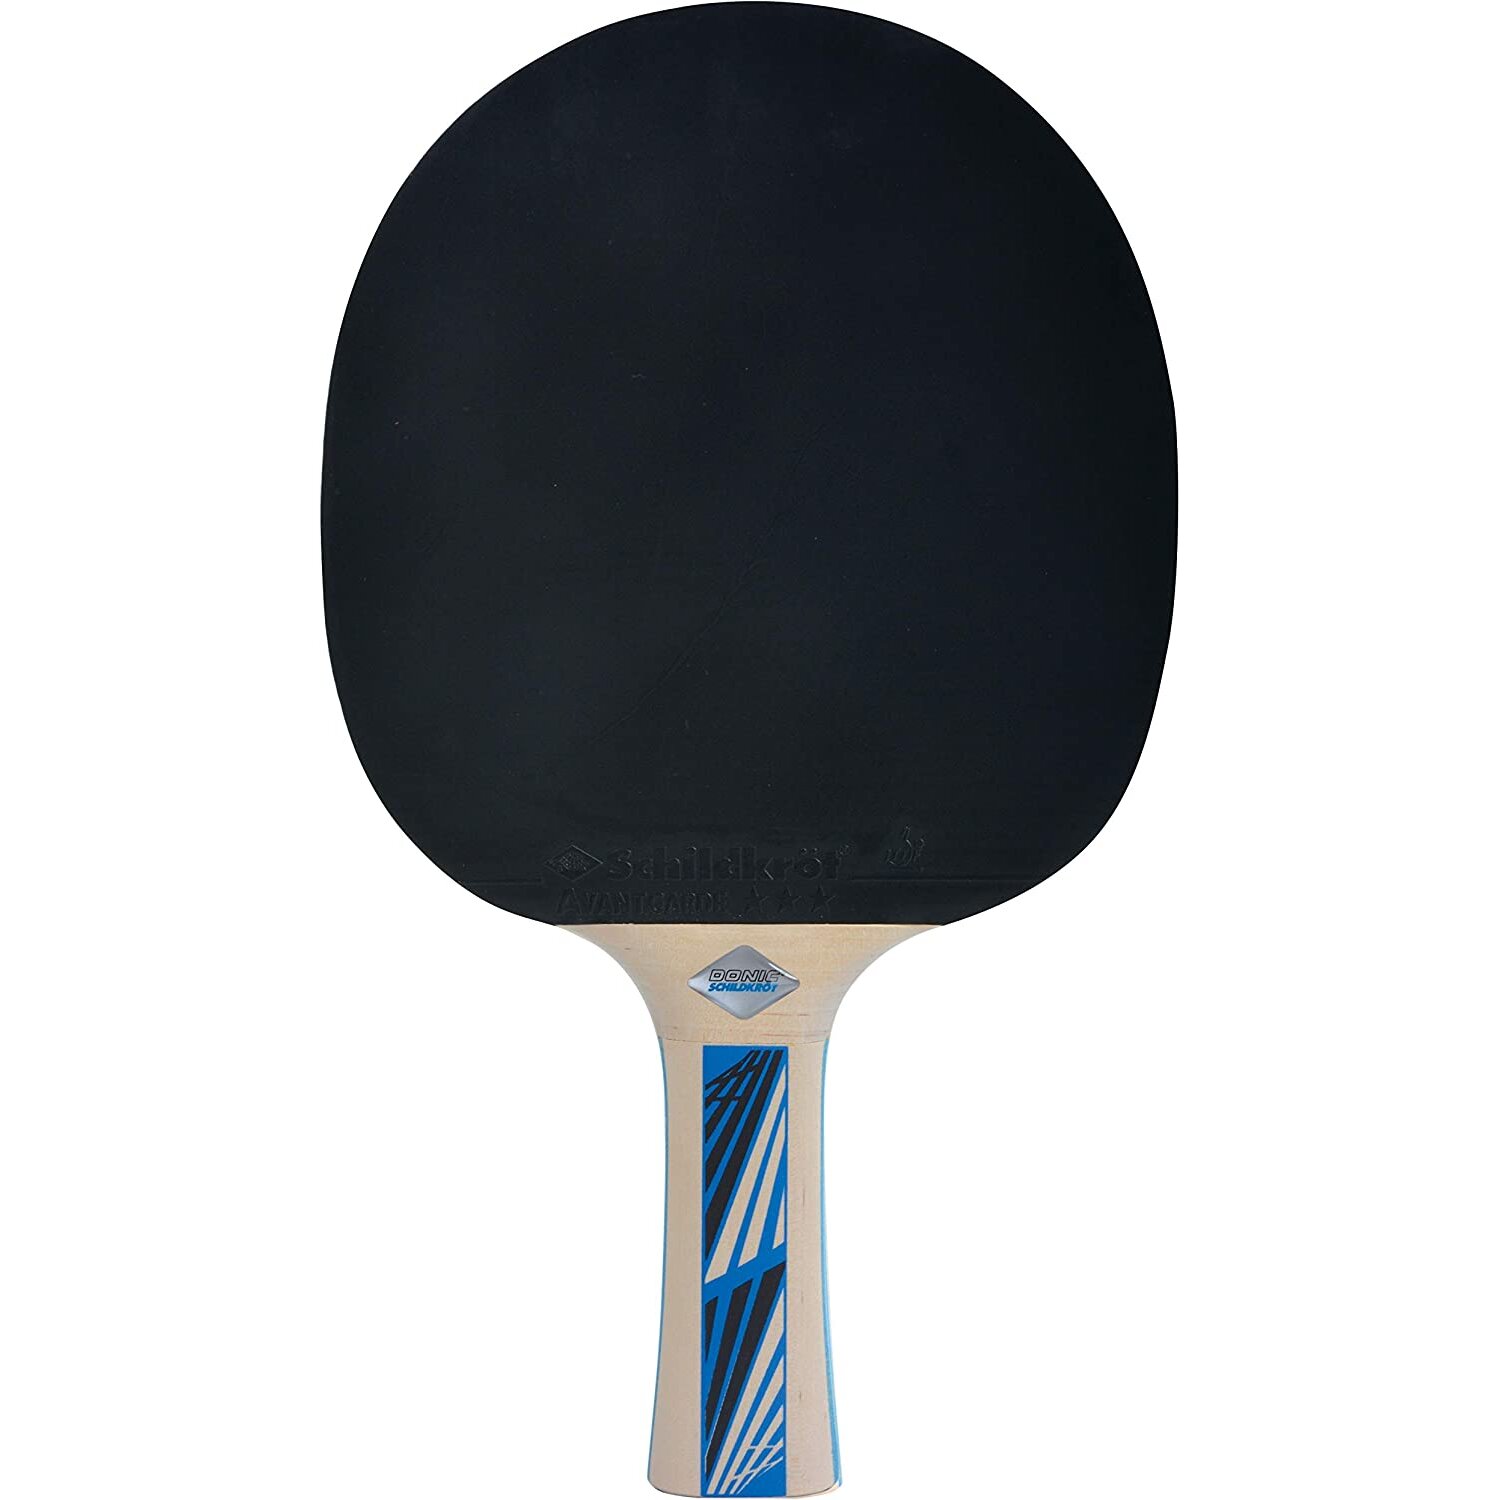 Donic Schildkrot Table Tennis Bats Legends 700 Ping Pong 2 Player Racket Set